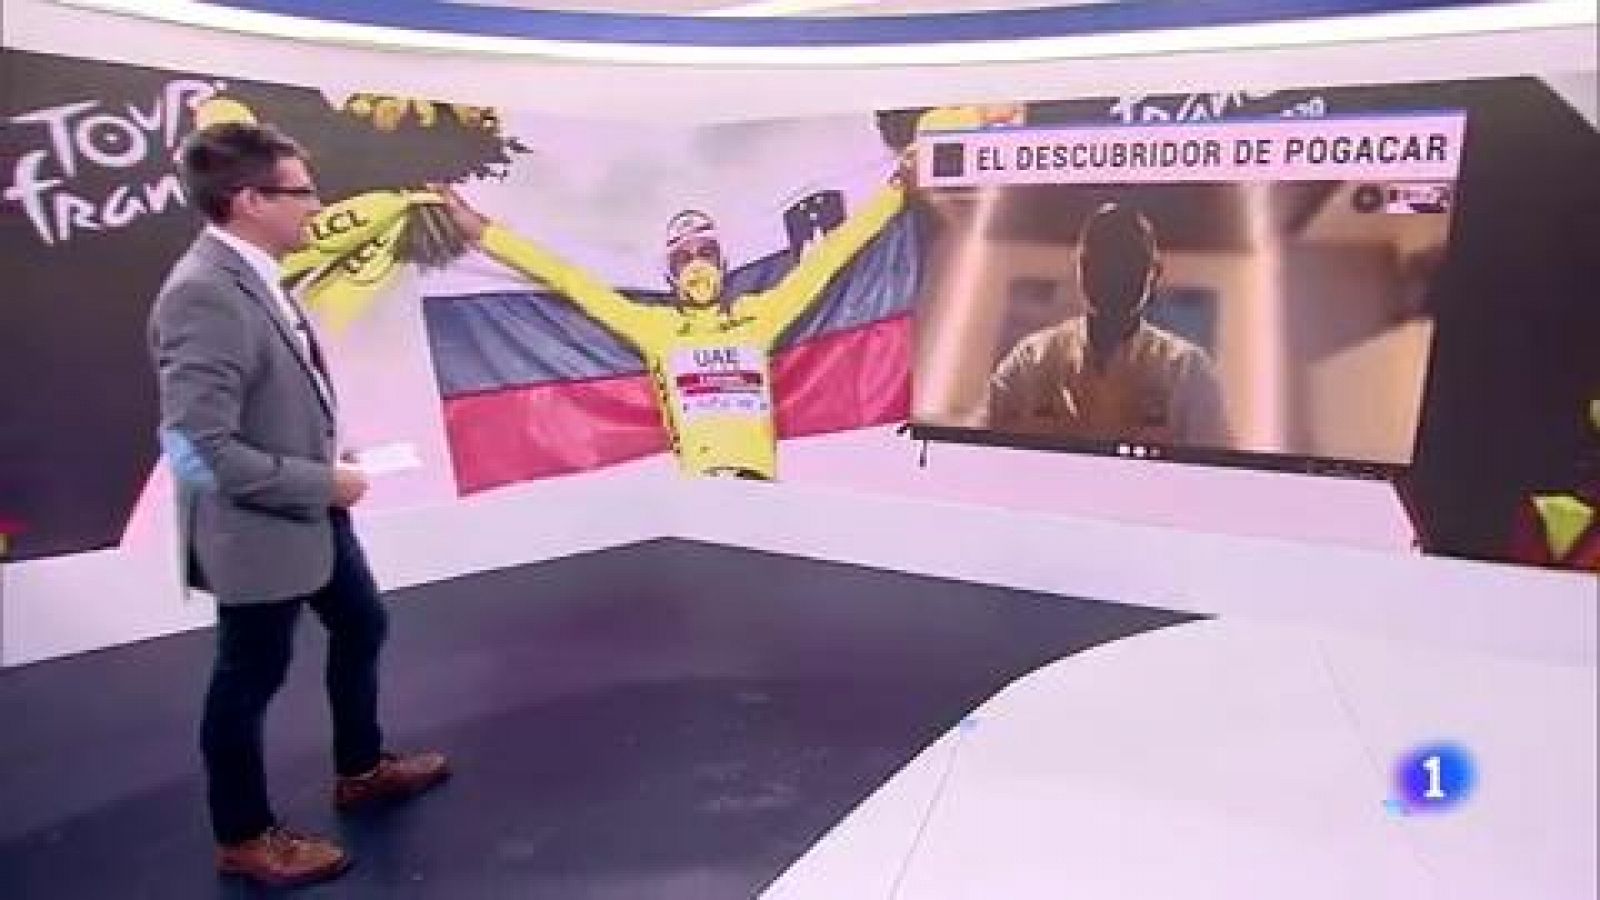 Tour de Francia 2020 | Josean Fernández 'Matxin: "Tocar la gloria es ganar el Tour de Francia y lo hemos conseguido"